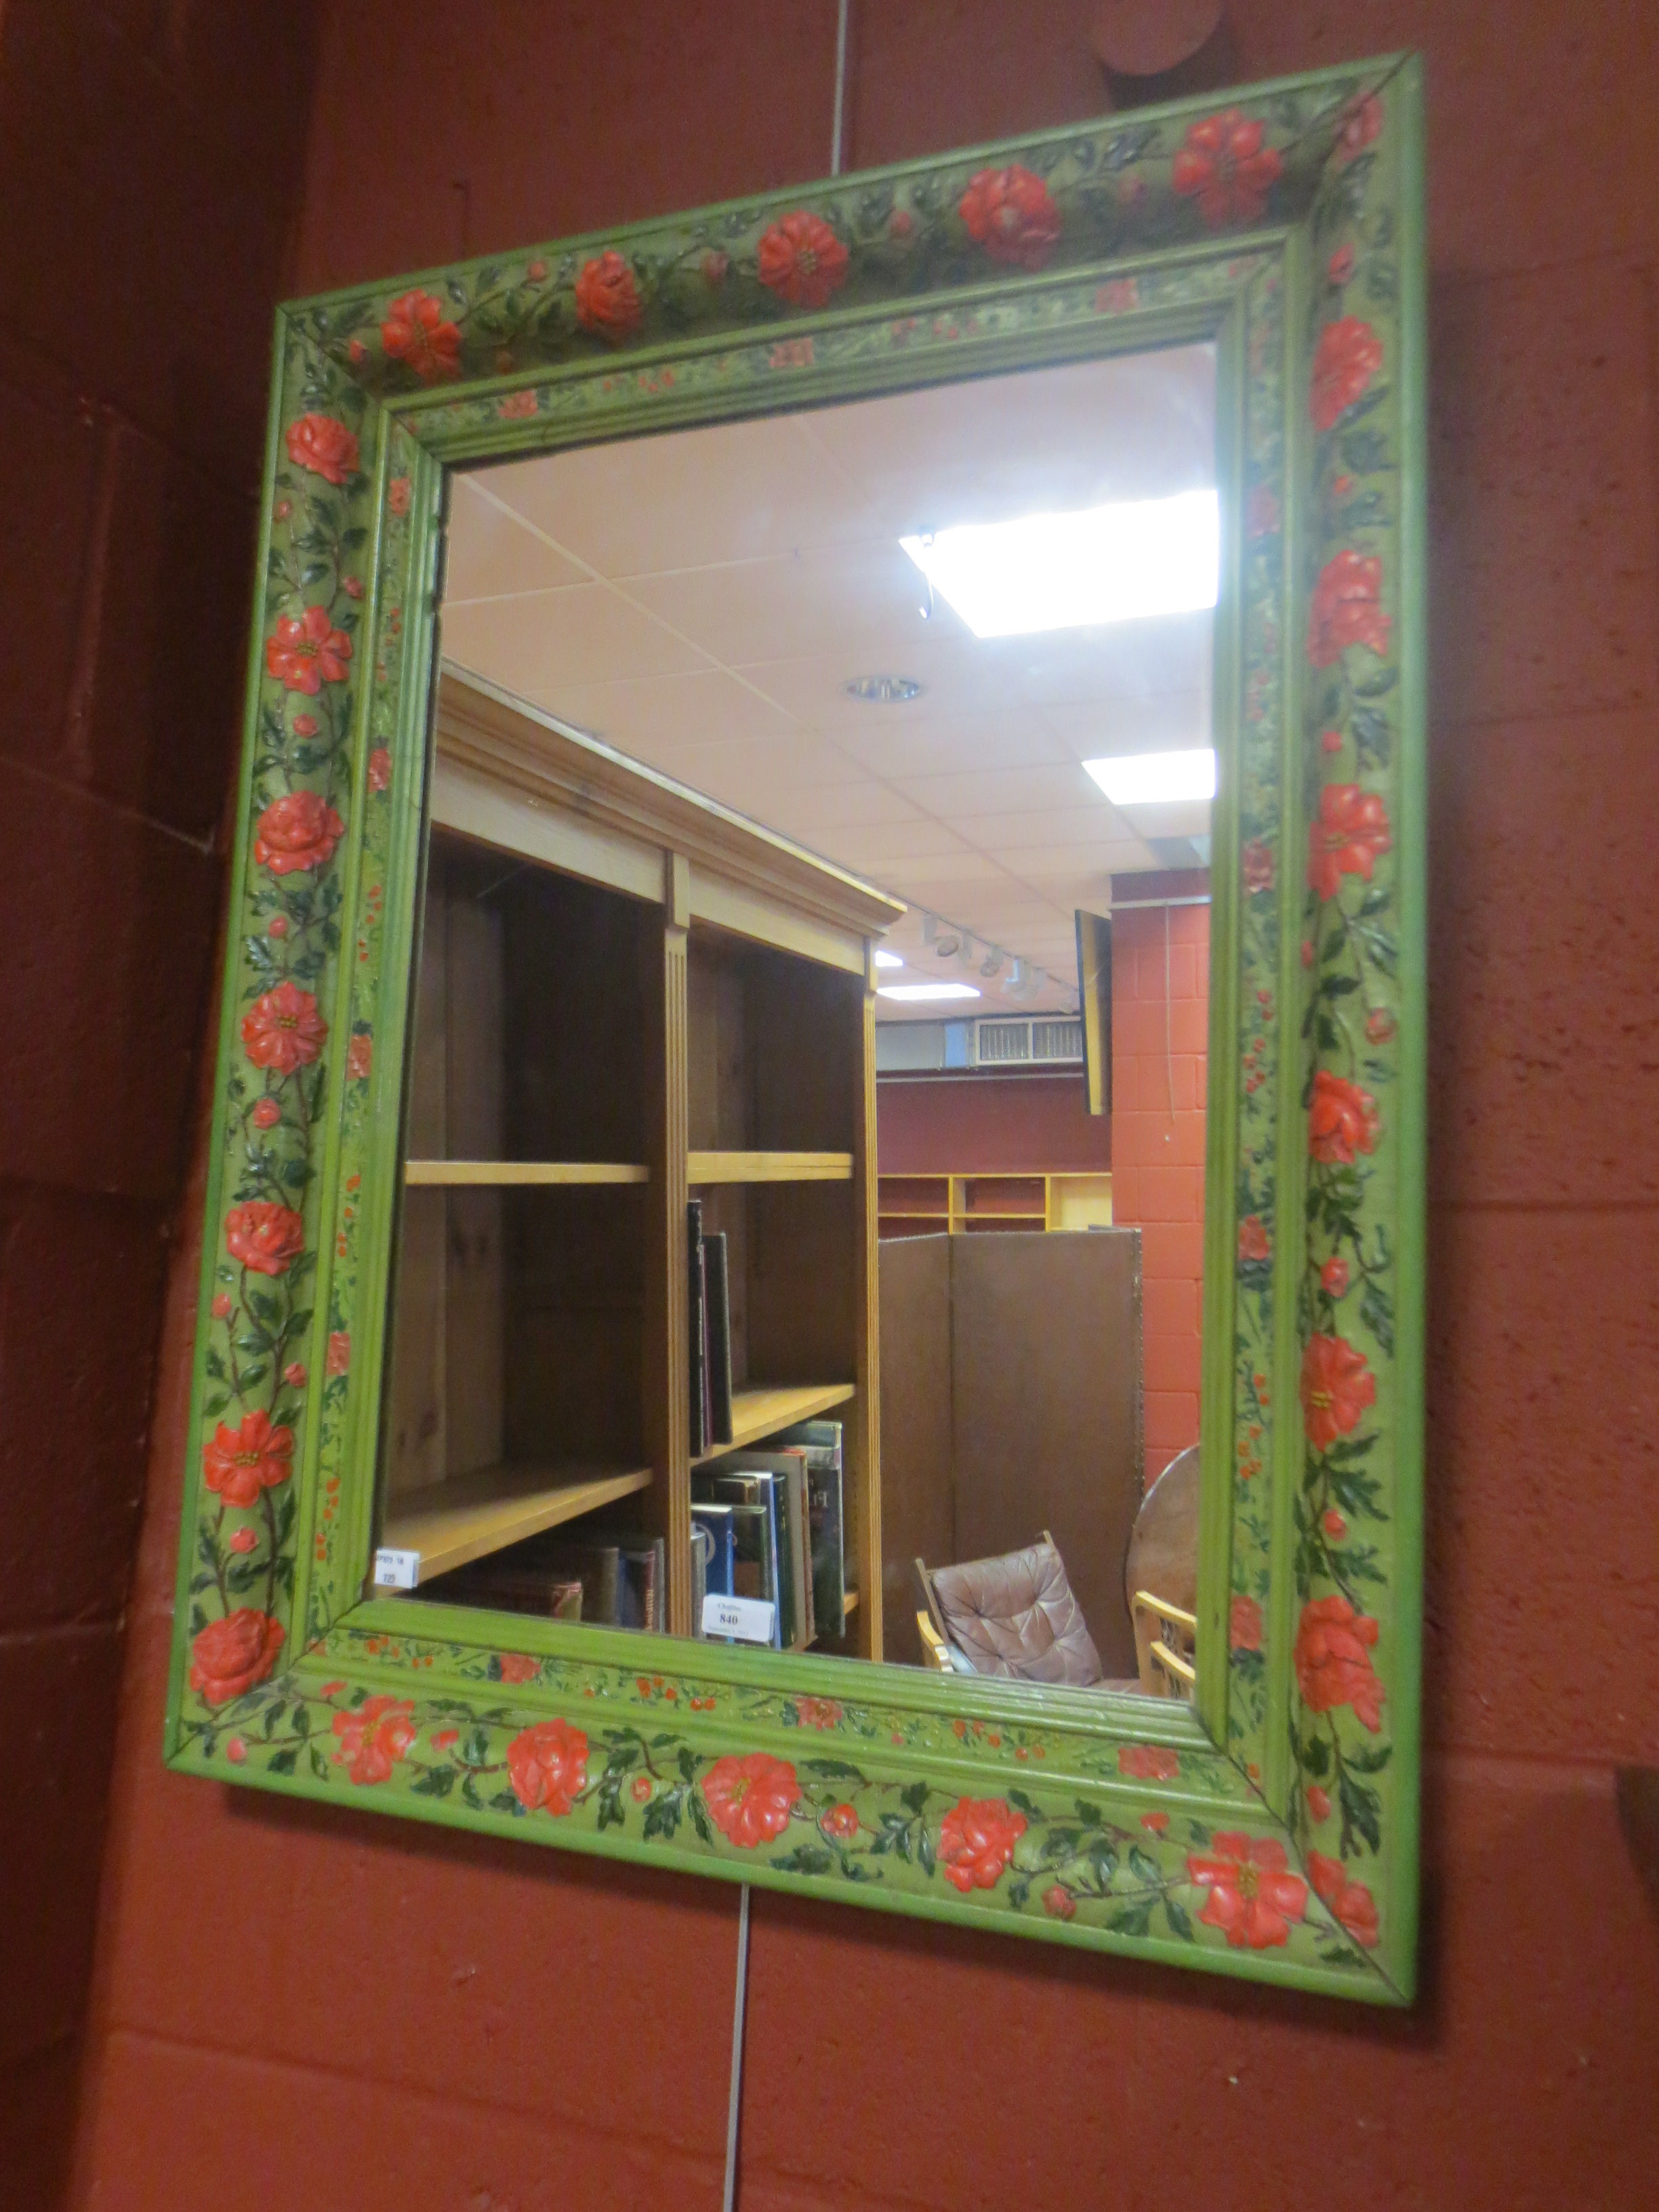 A painted frame mirror A painted frame mirror